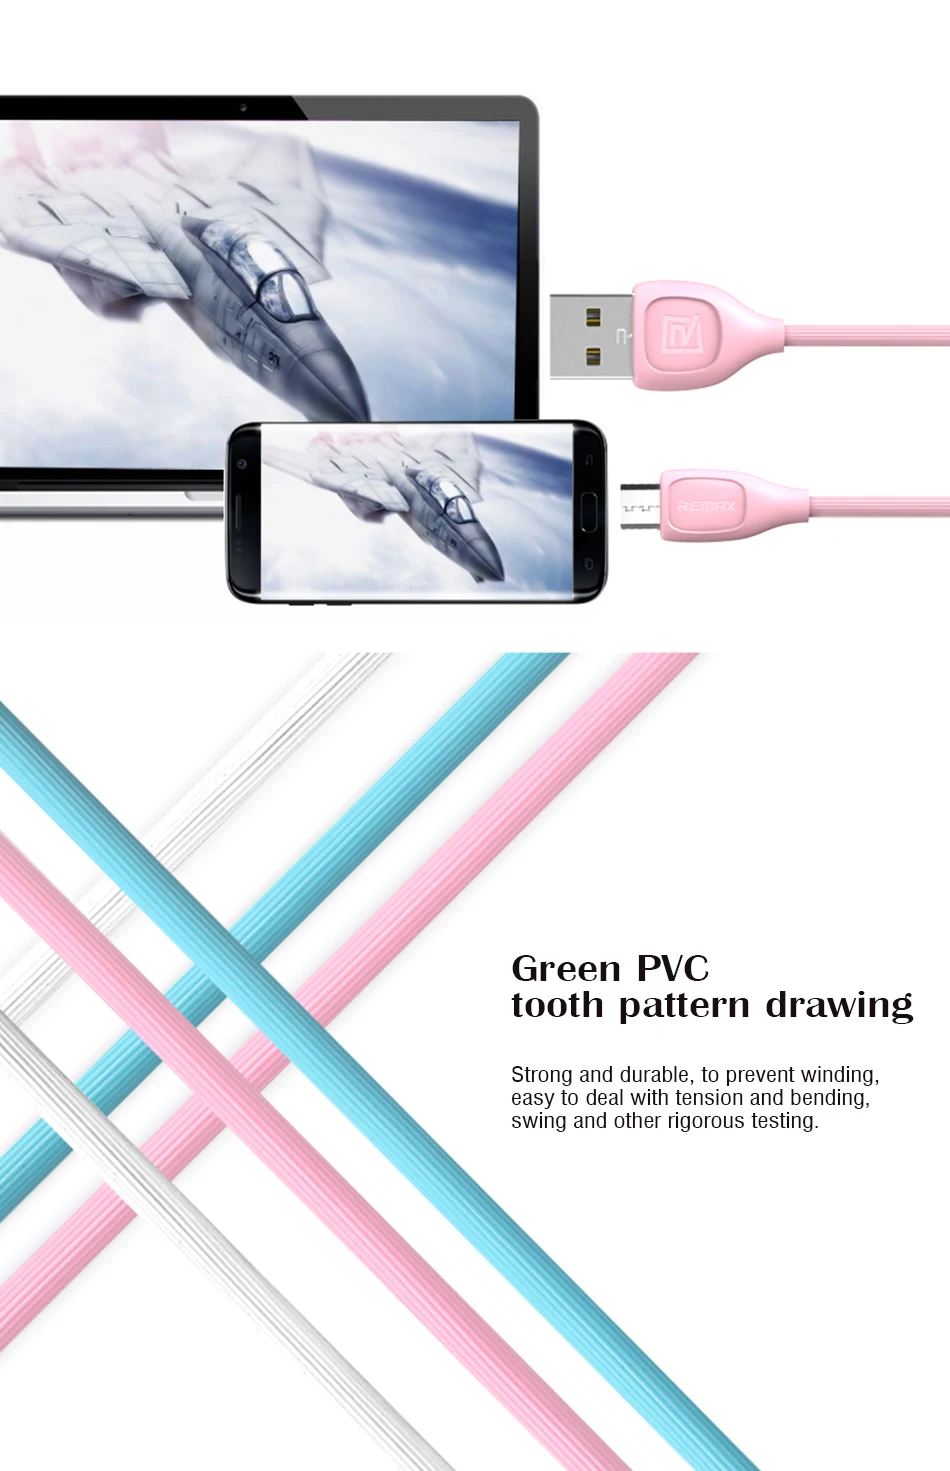 Remax Micro USB кабель для передачи данных и синхронизации для быстрой зарядки для Xiaomi redmi 4x samsung 8-контактный кабель для зарядки iphone x 6 7 8